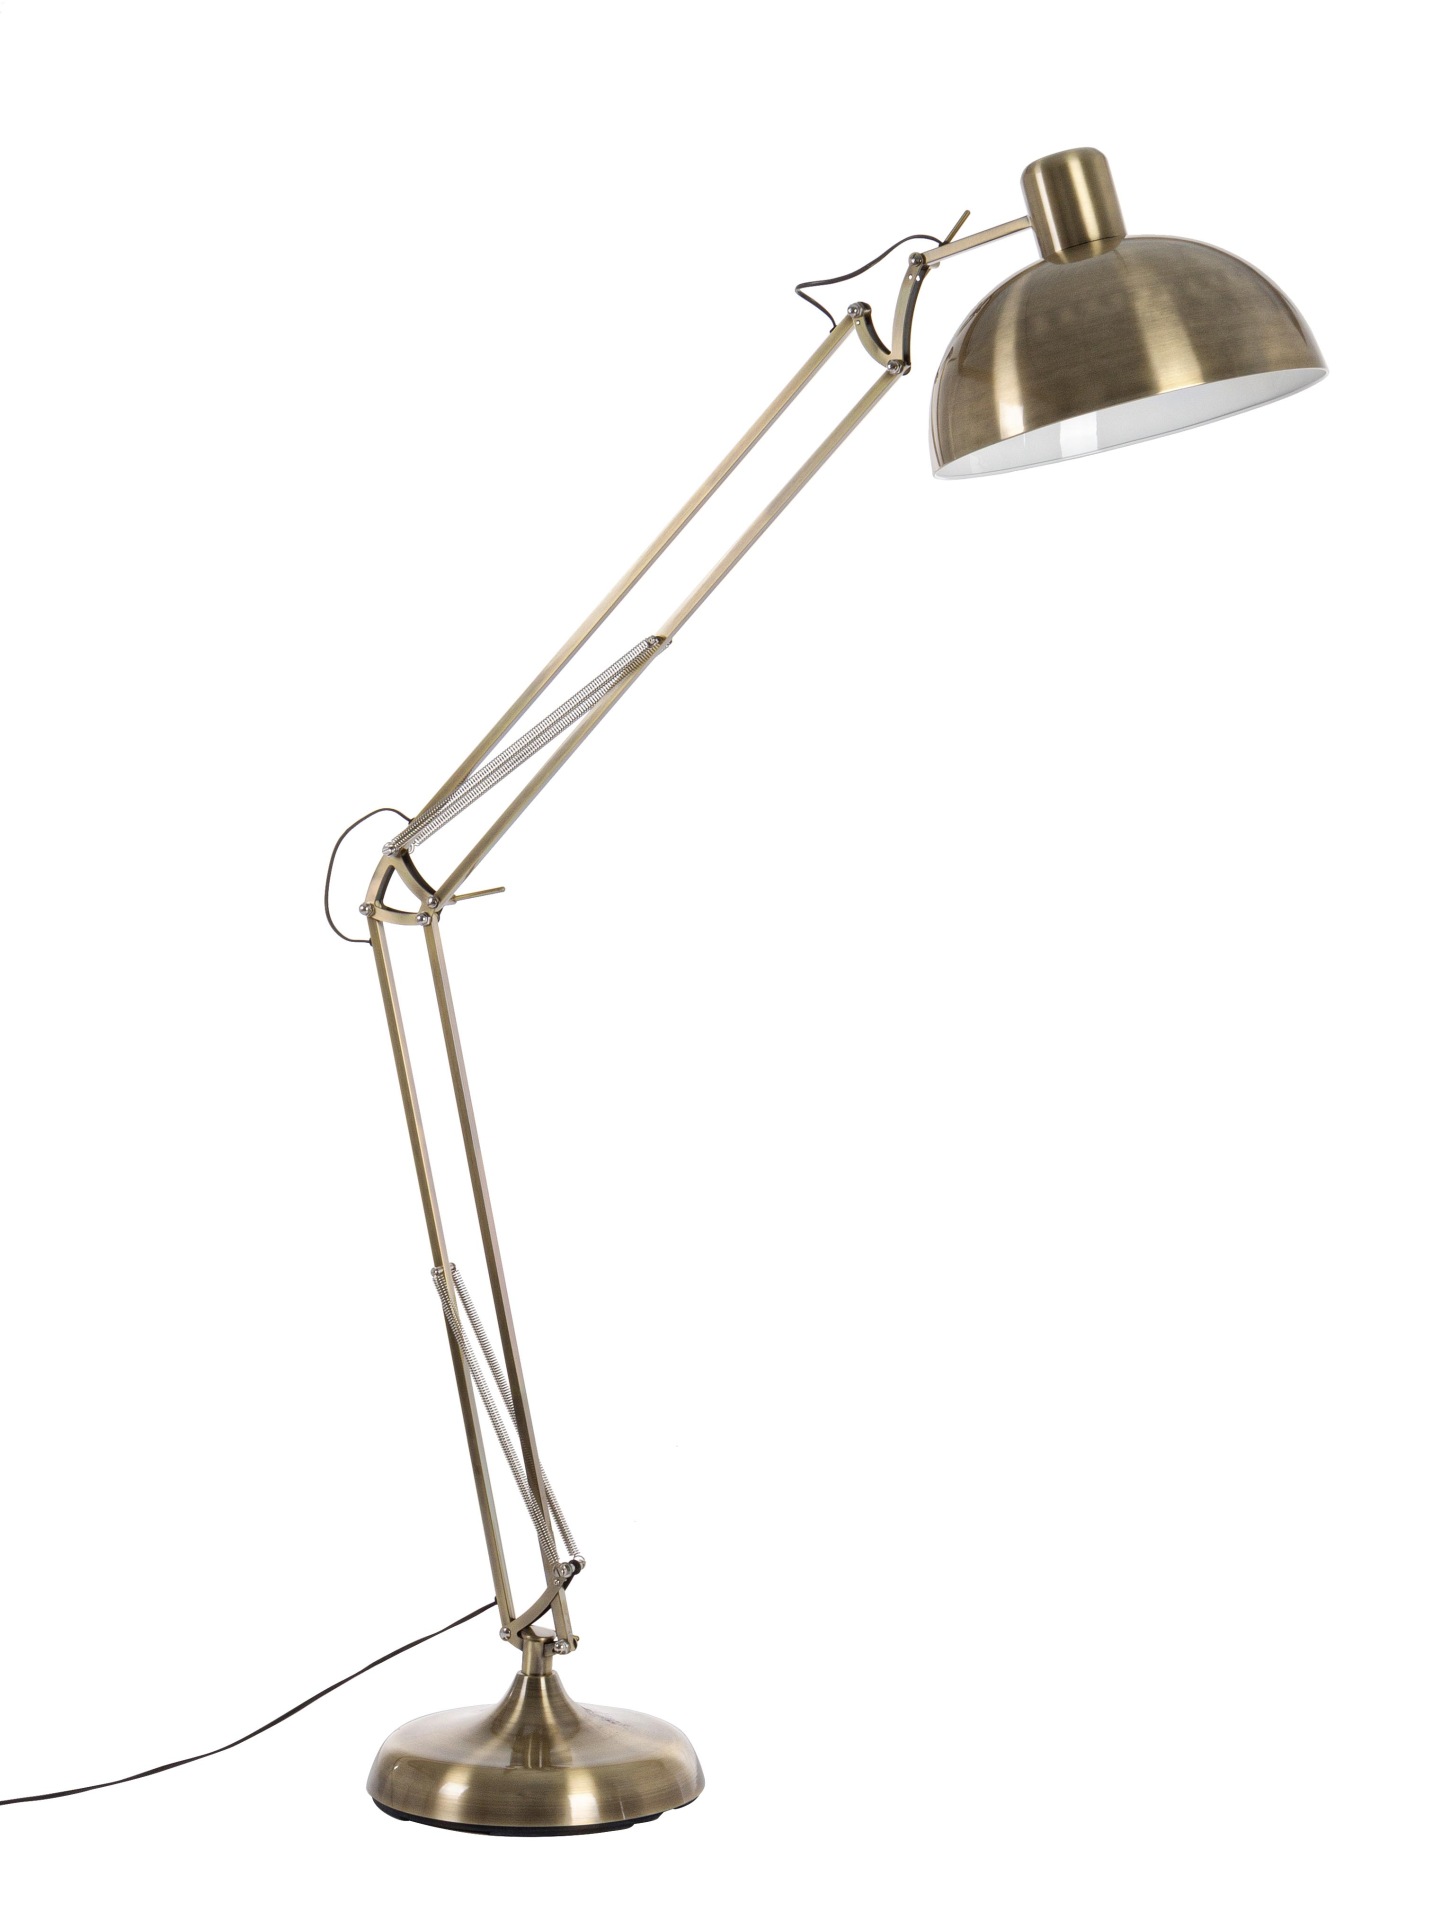 Die Stehleuchte Big überzeugt mit ihrem klassischen Design. Gefertigt wurde sie aus Metall, welches einen Messing Farbton besitzt. Der Lampenschirm ist auch aus Metall. Die Lampe besitzt eine Höhe von 180 cm.